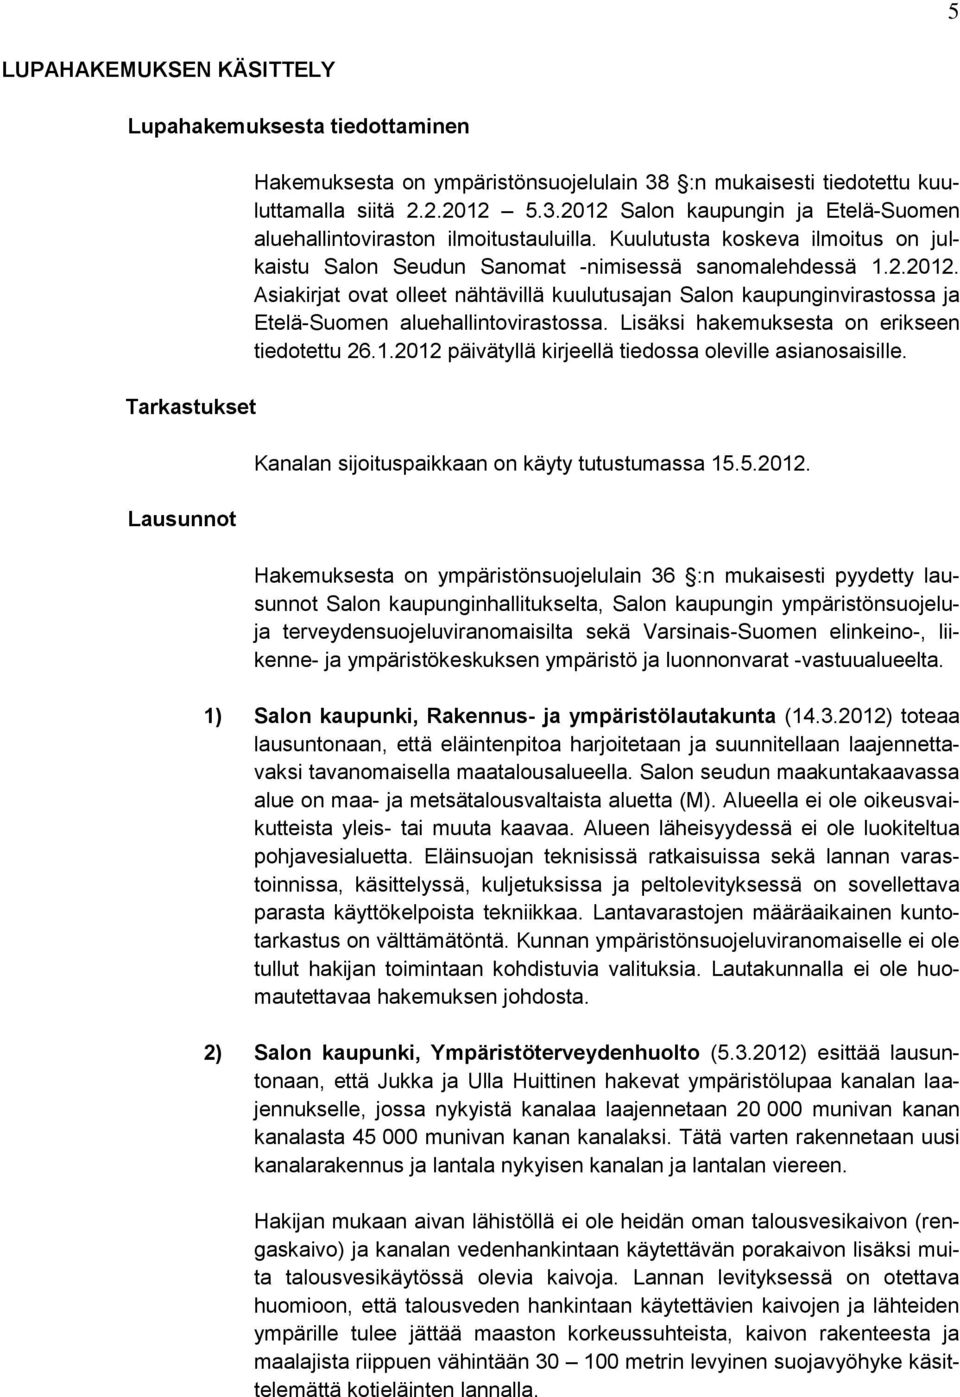 Asiakirjat ovat olleet nähtävillä kuulutusajan Salon kaupunginvirastossa ja Etelä-Suomen aluehallintovirastossa. Lisäksi hakemuksesta on erikseen tiedotettu 26.1.